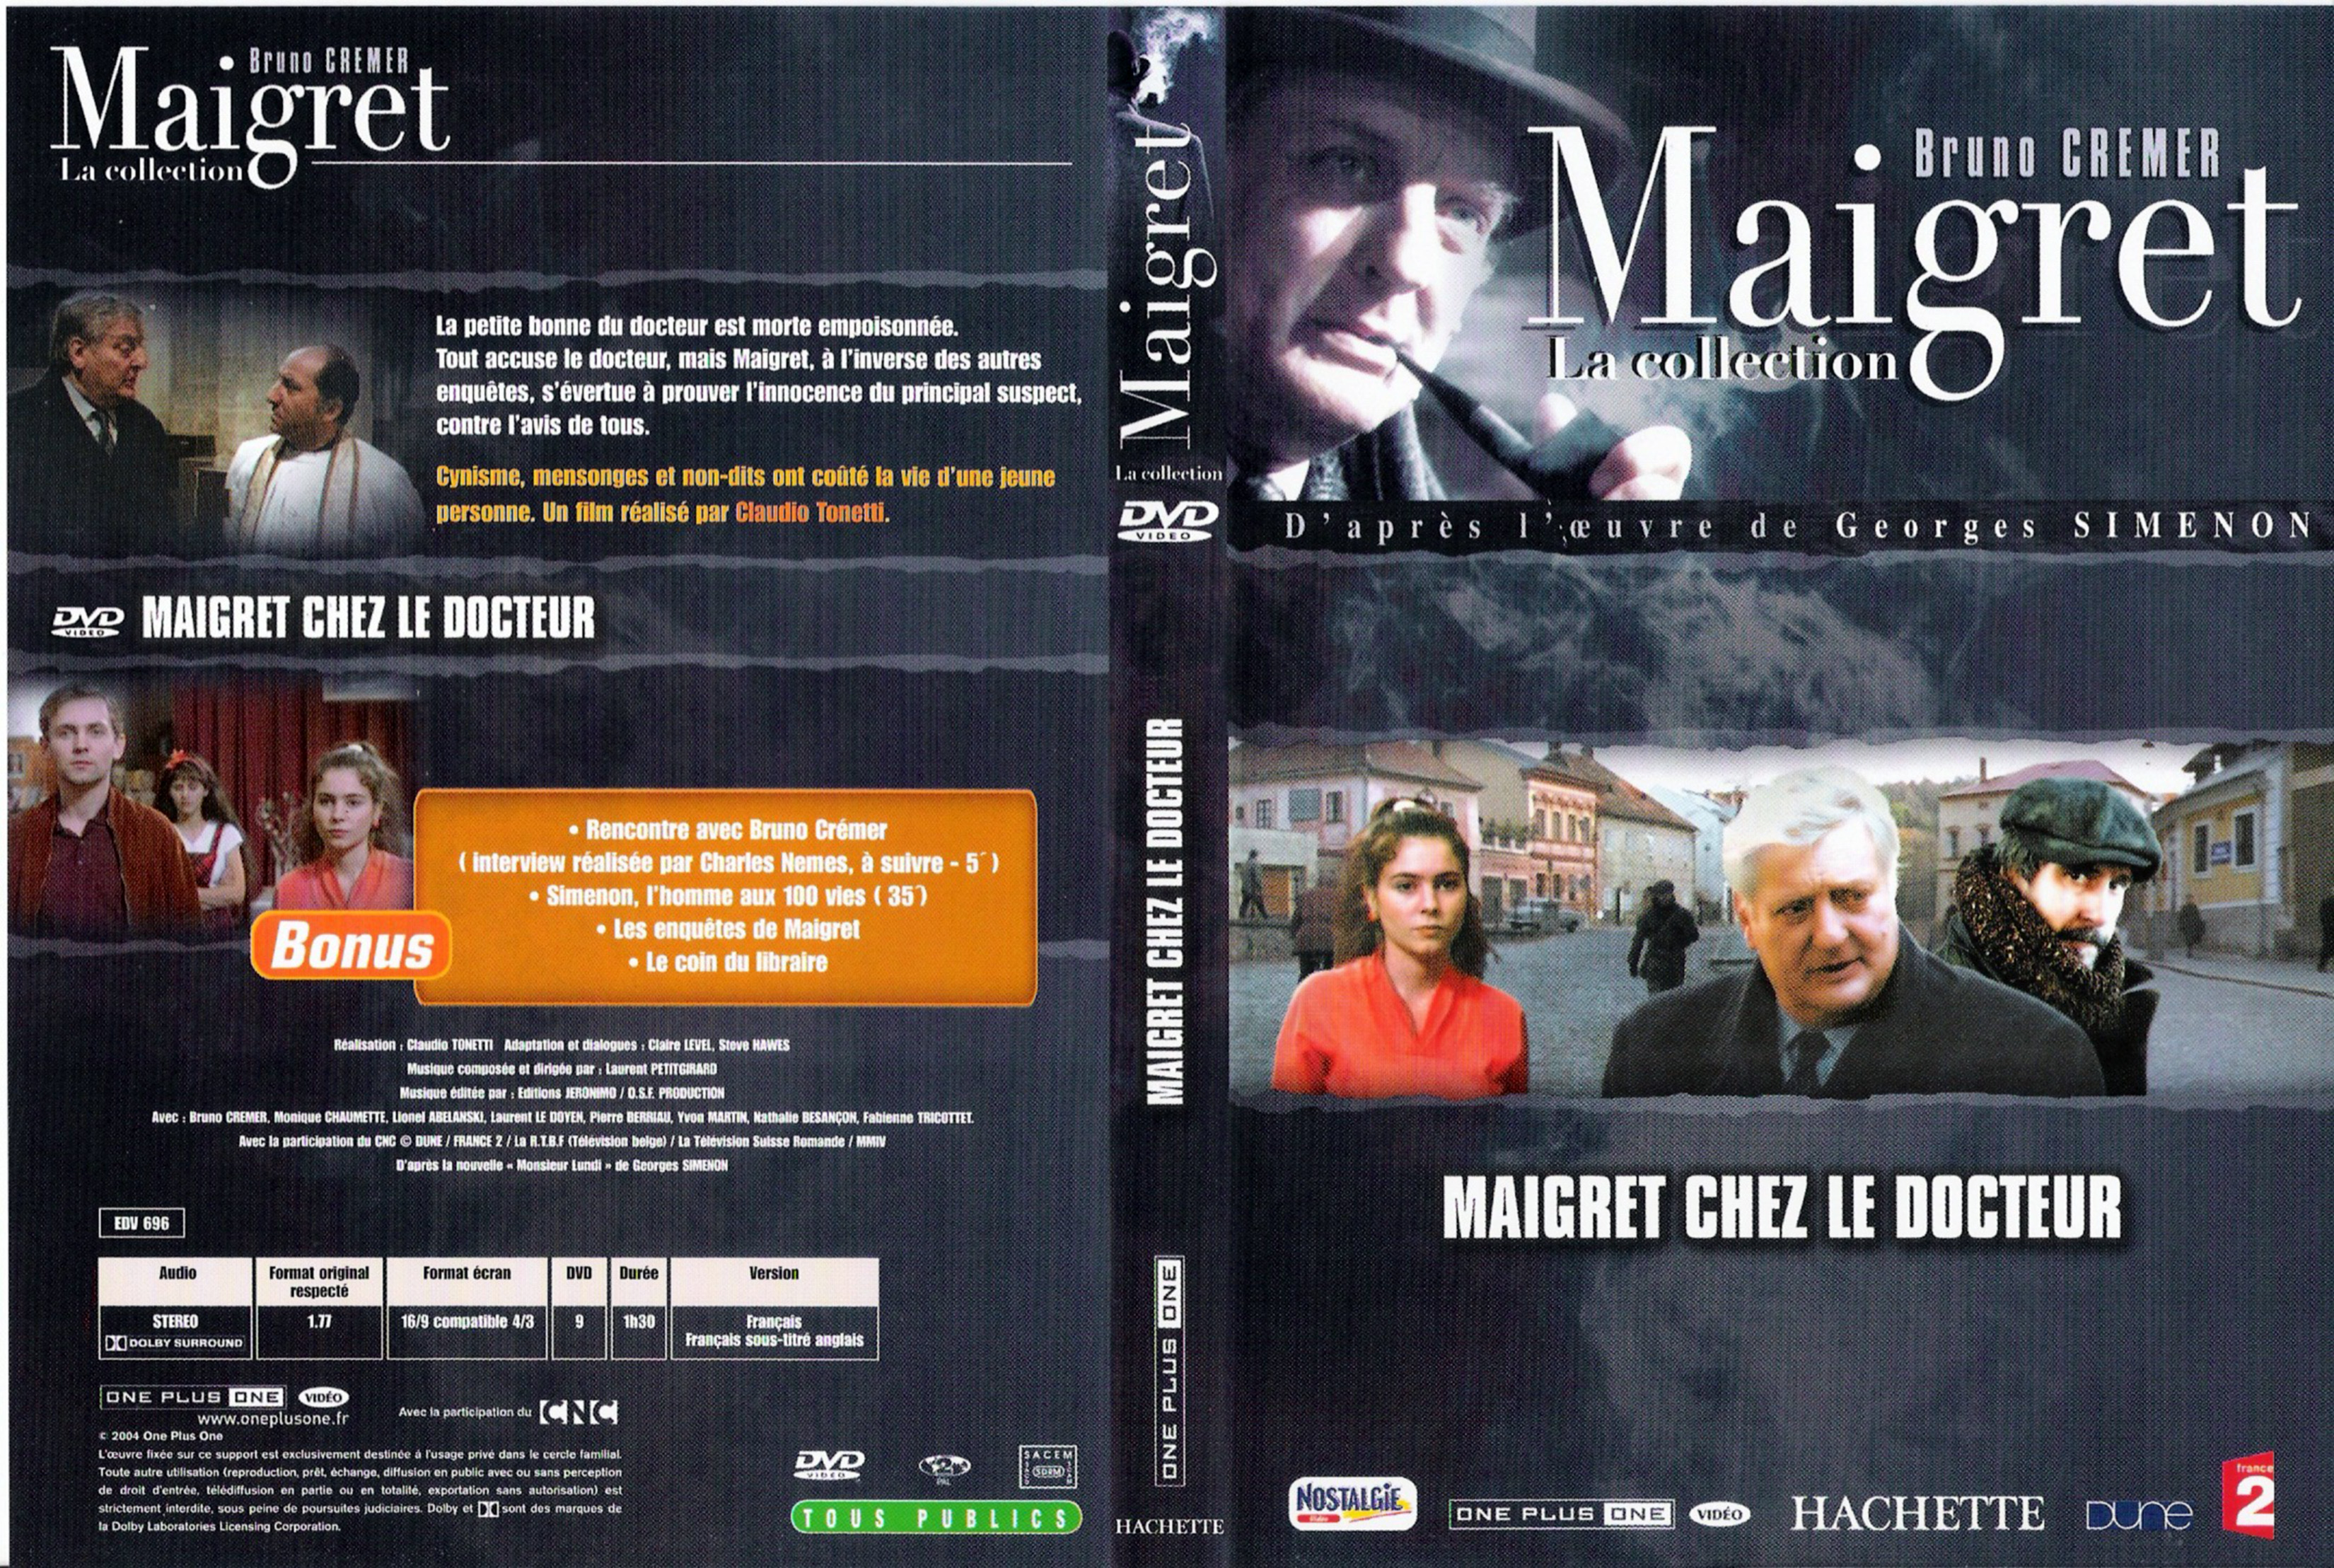 Jaquette DVD Maigret chez le docteur (Bruno Cremer)